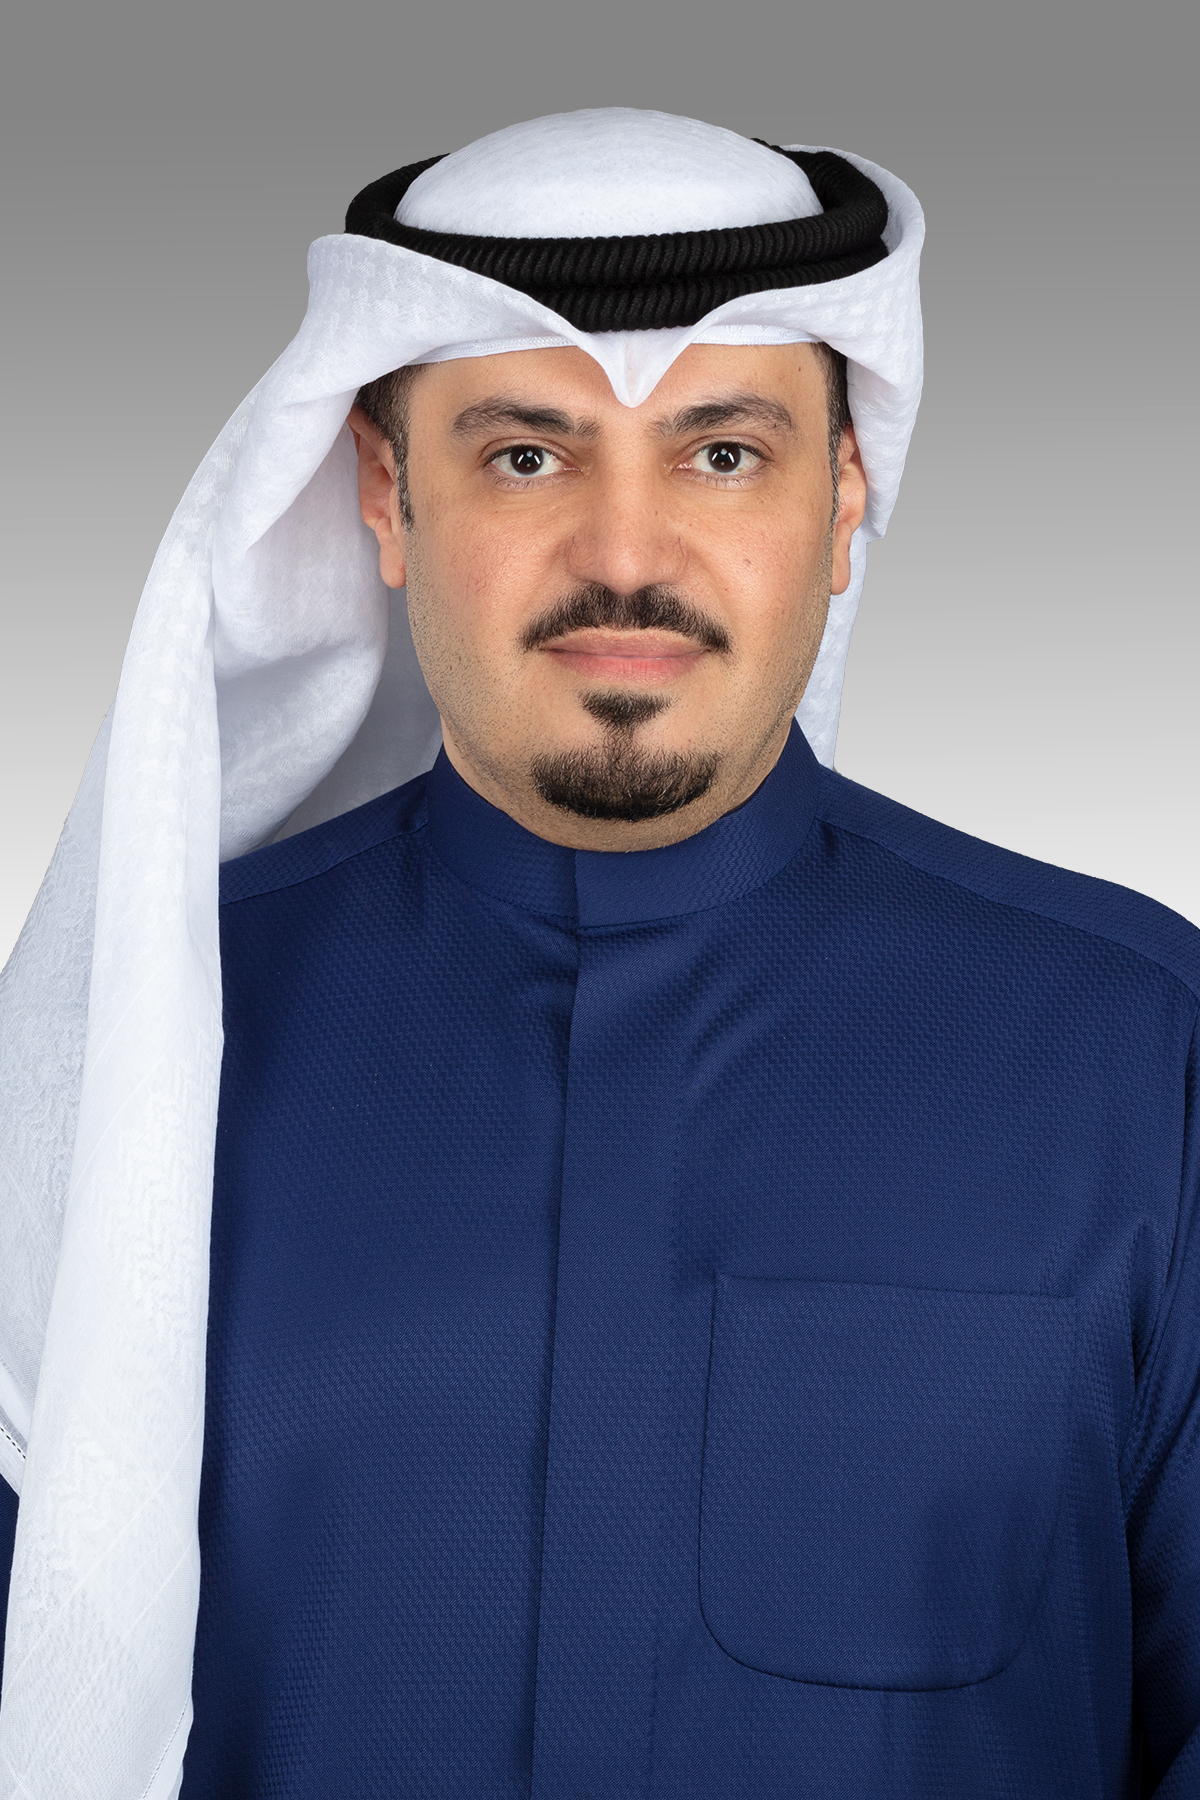 هشام الصالح يقترح خفض قيمة قسائم مشروع جنوب عبدالله المبارك أسوة بالمدن الأخرى